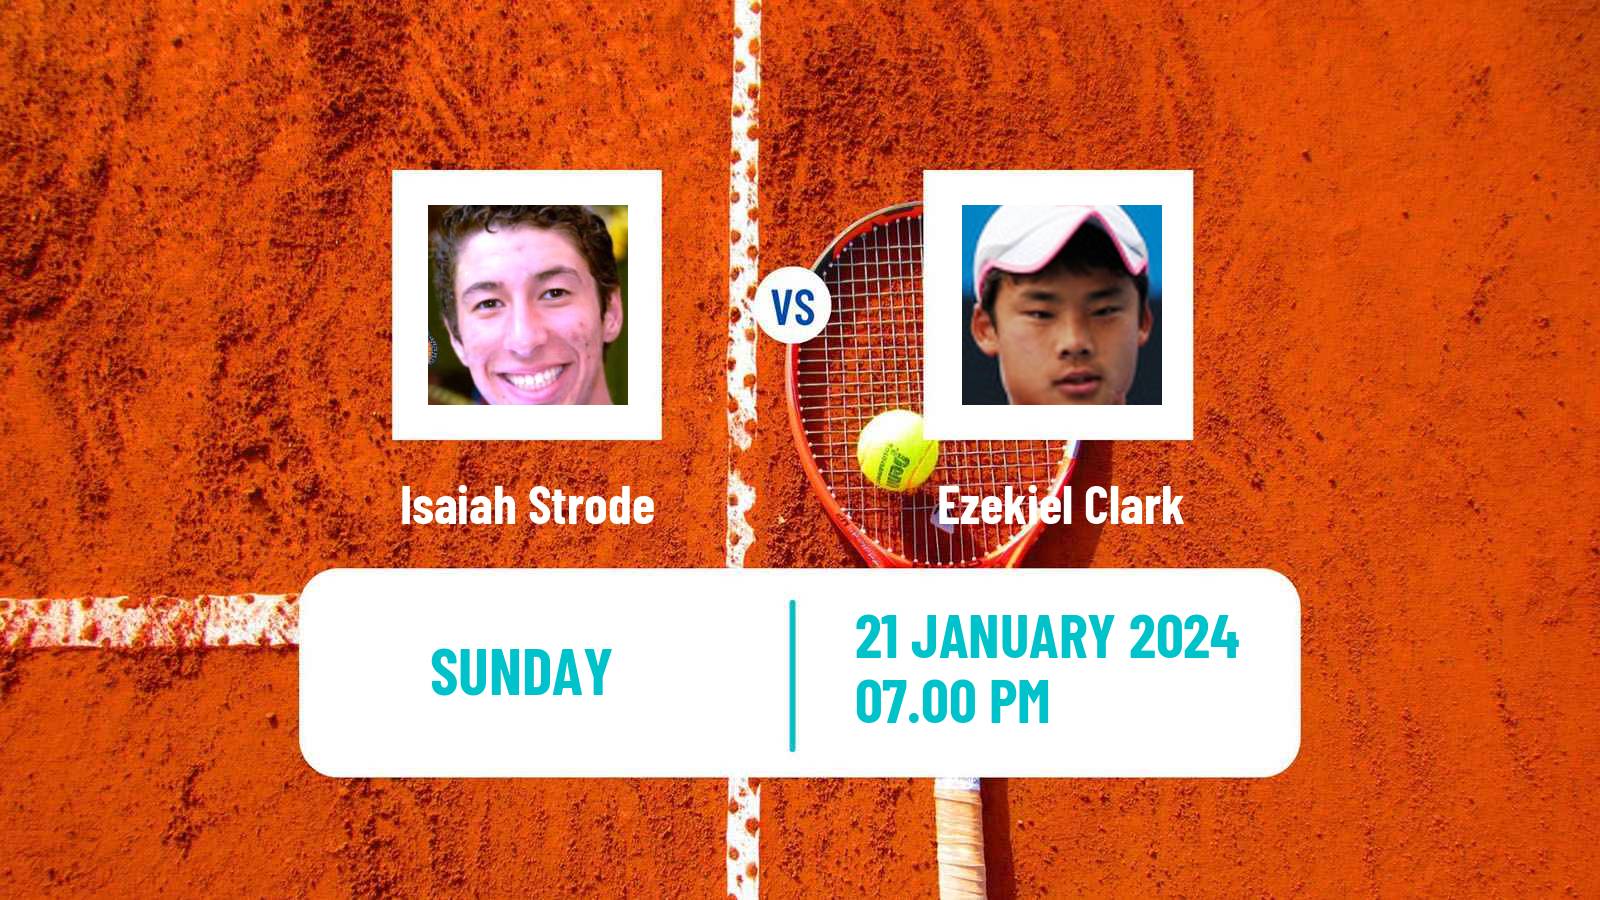 Tennis Indian Wells 2 Challenger Men Isaiah Strode - Ezekiel Clark